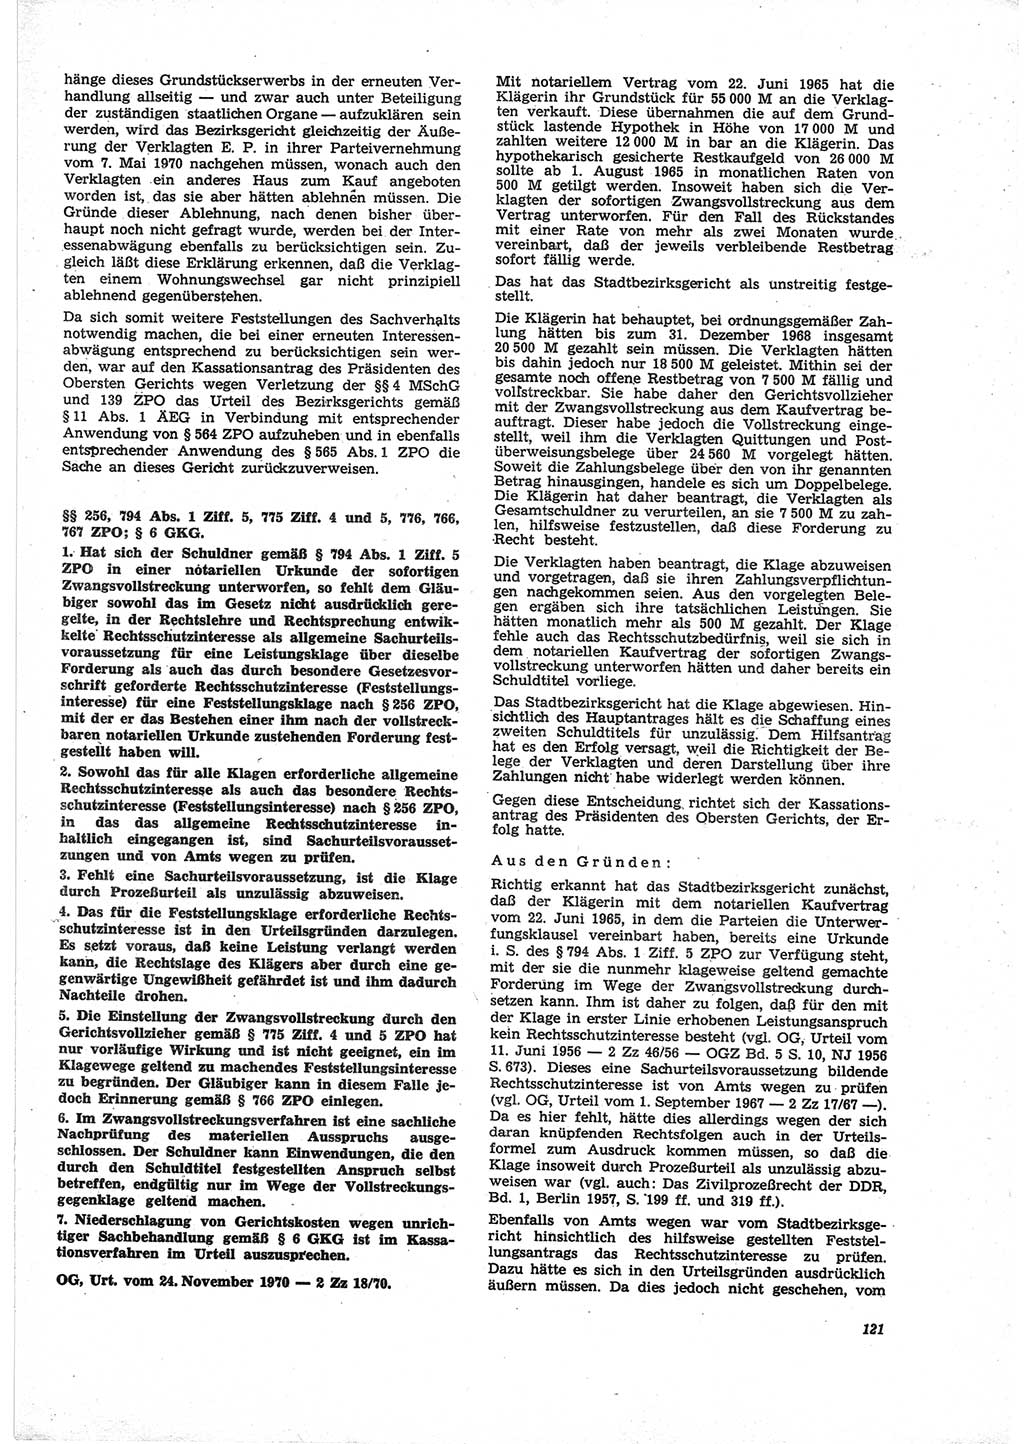 Neue Justiz (NJ), Zeitschrift für Recht und Rechtswissenschaft [Deutsche Demokratische Republik (DDR)], 25. Jahrgang 1971, Seite 121 (NJ DDR 1971, S. 121)